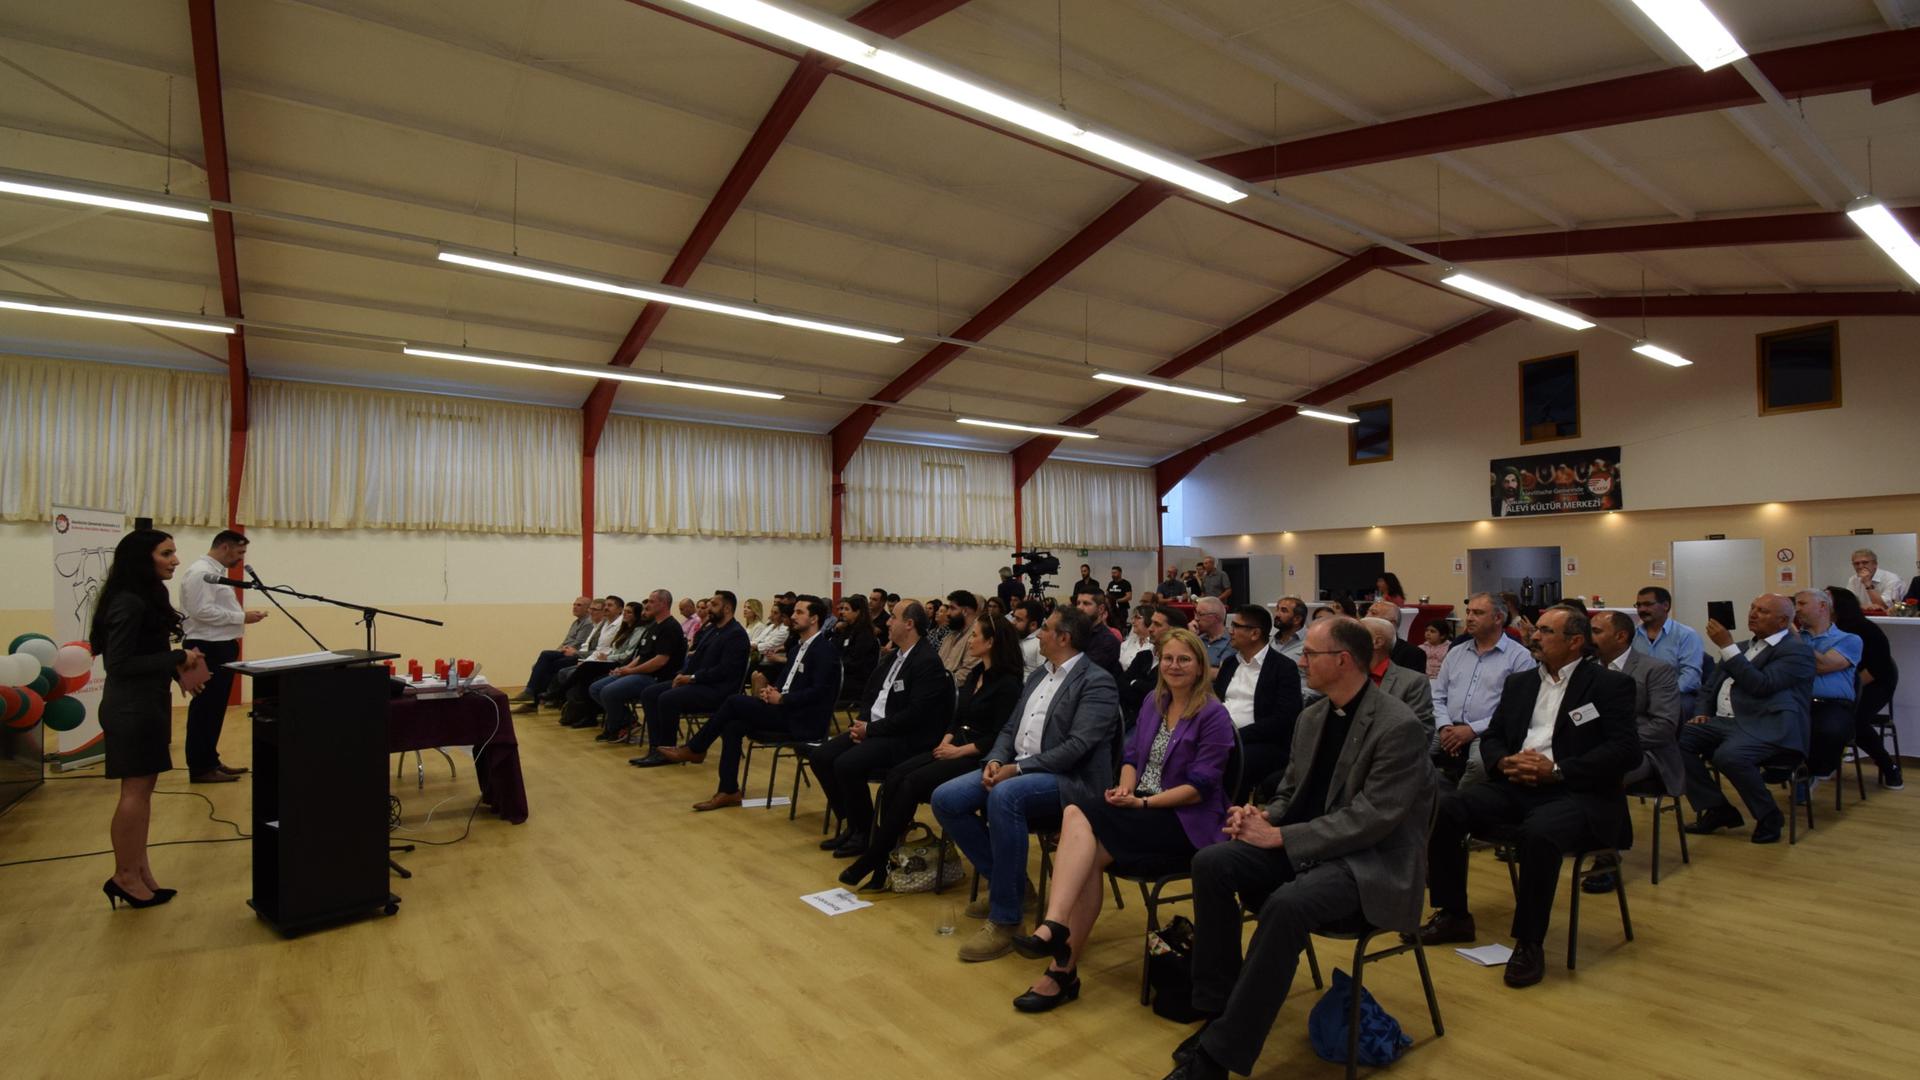 Gäste hören bei der Eröffnung des neuen Gemeindehauses der Alevitischen Gemeinde den Moderatoren der Veranstaltung zu.